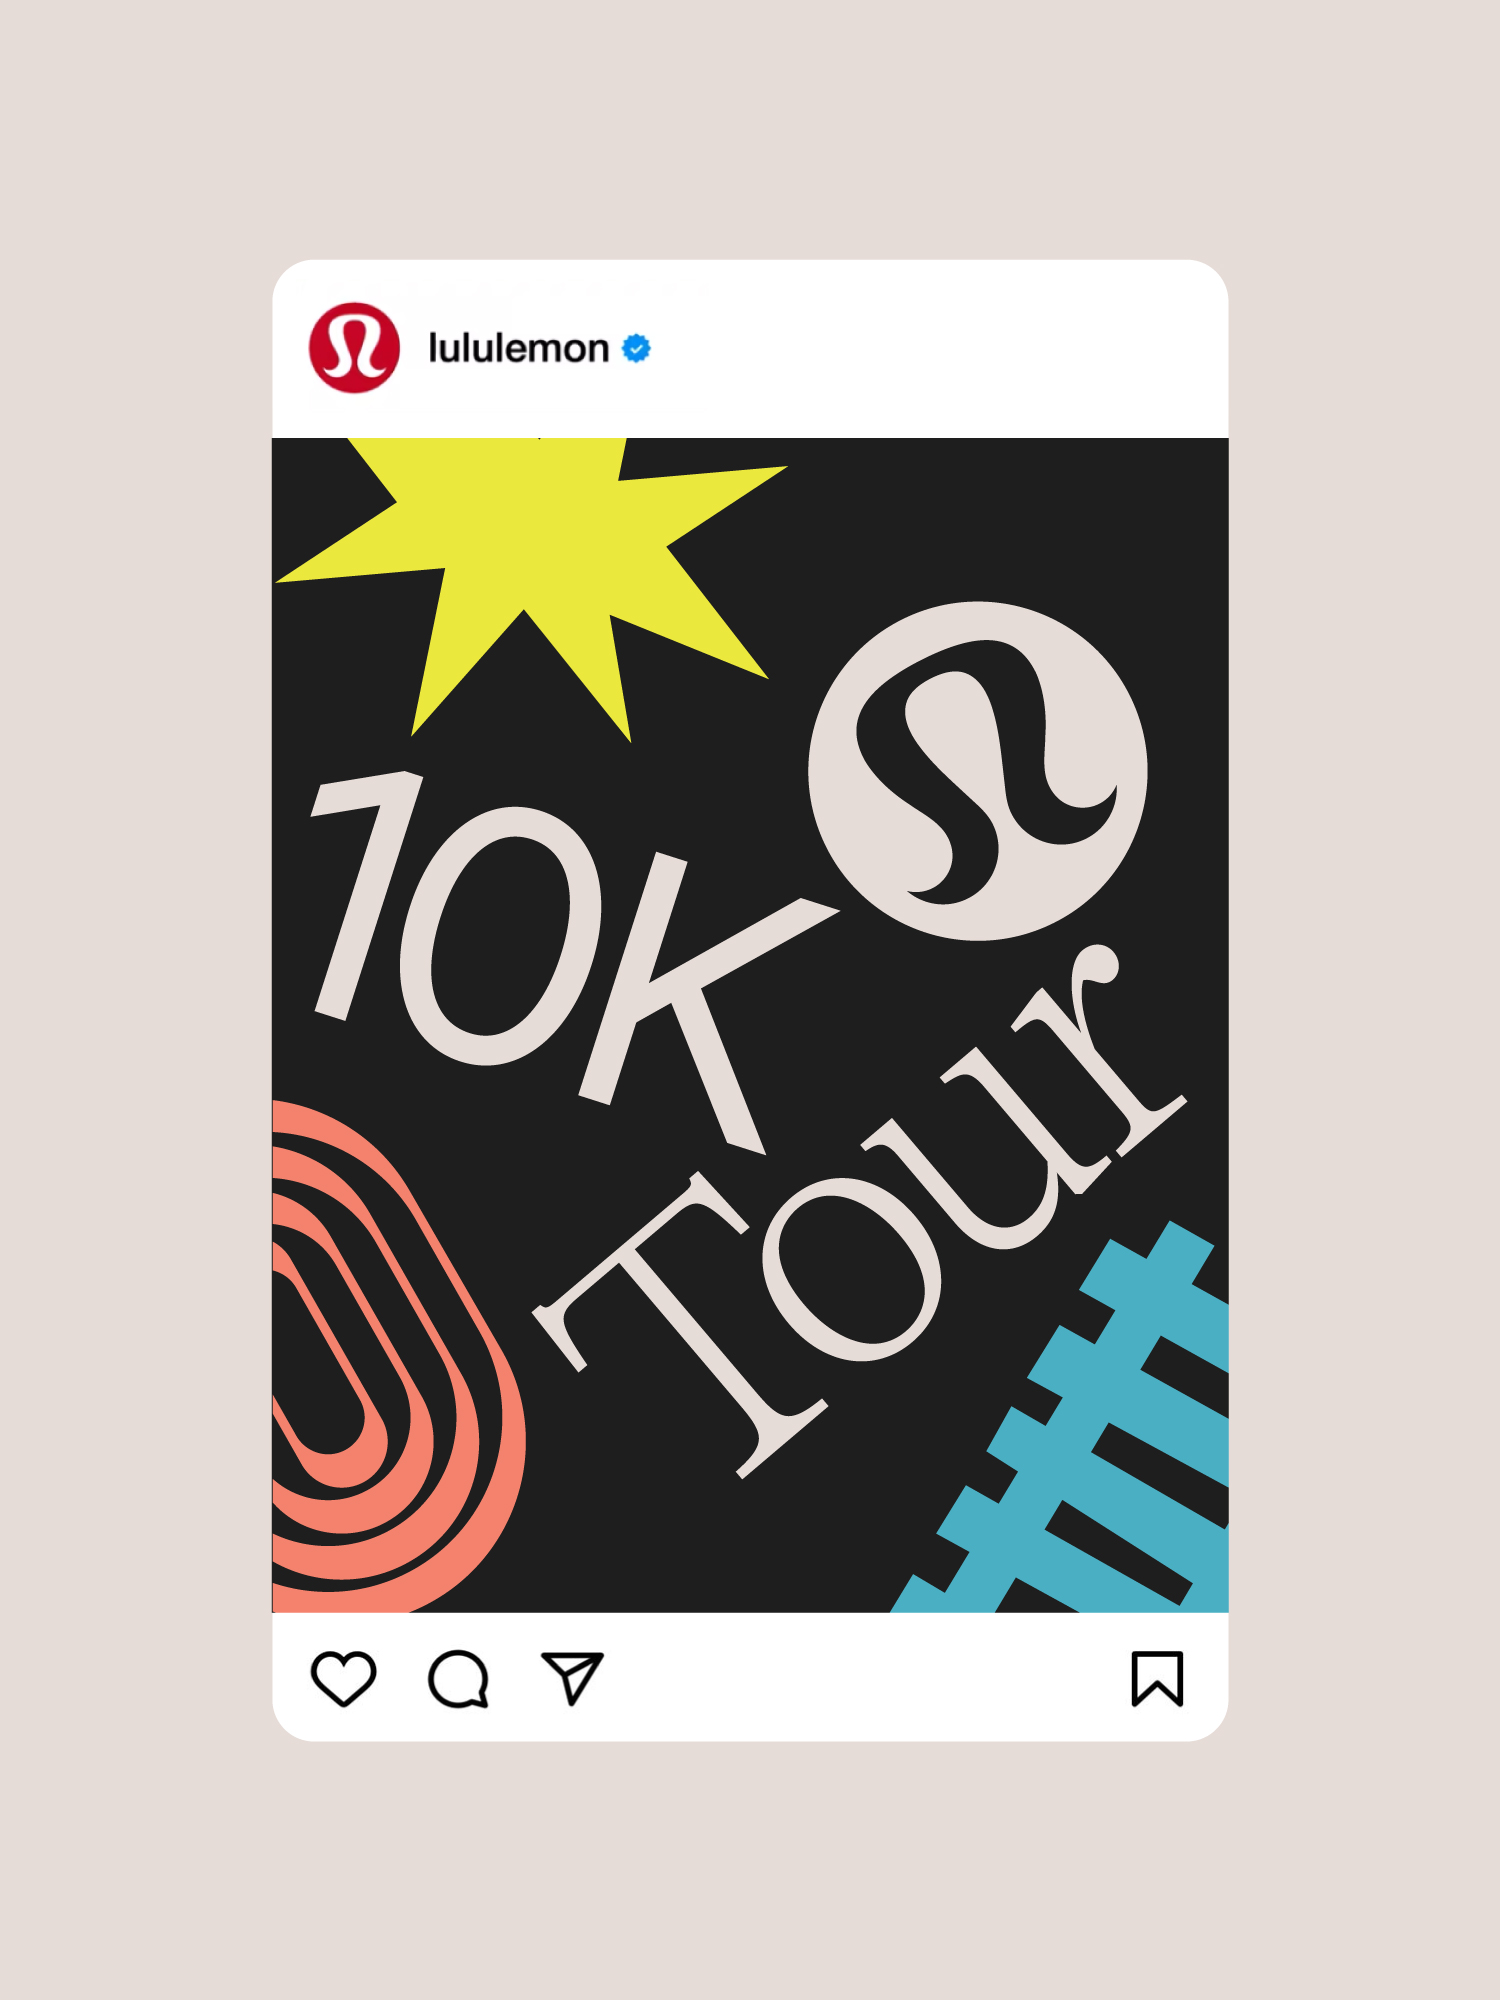 Event Information - lululemon 10K Tour